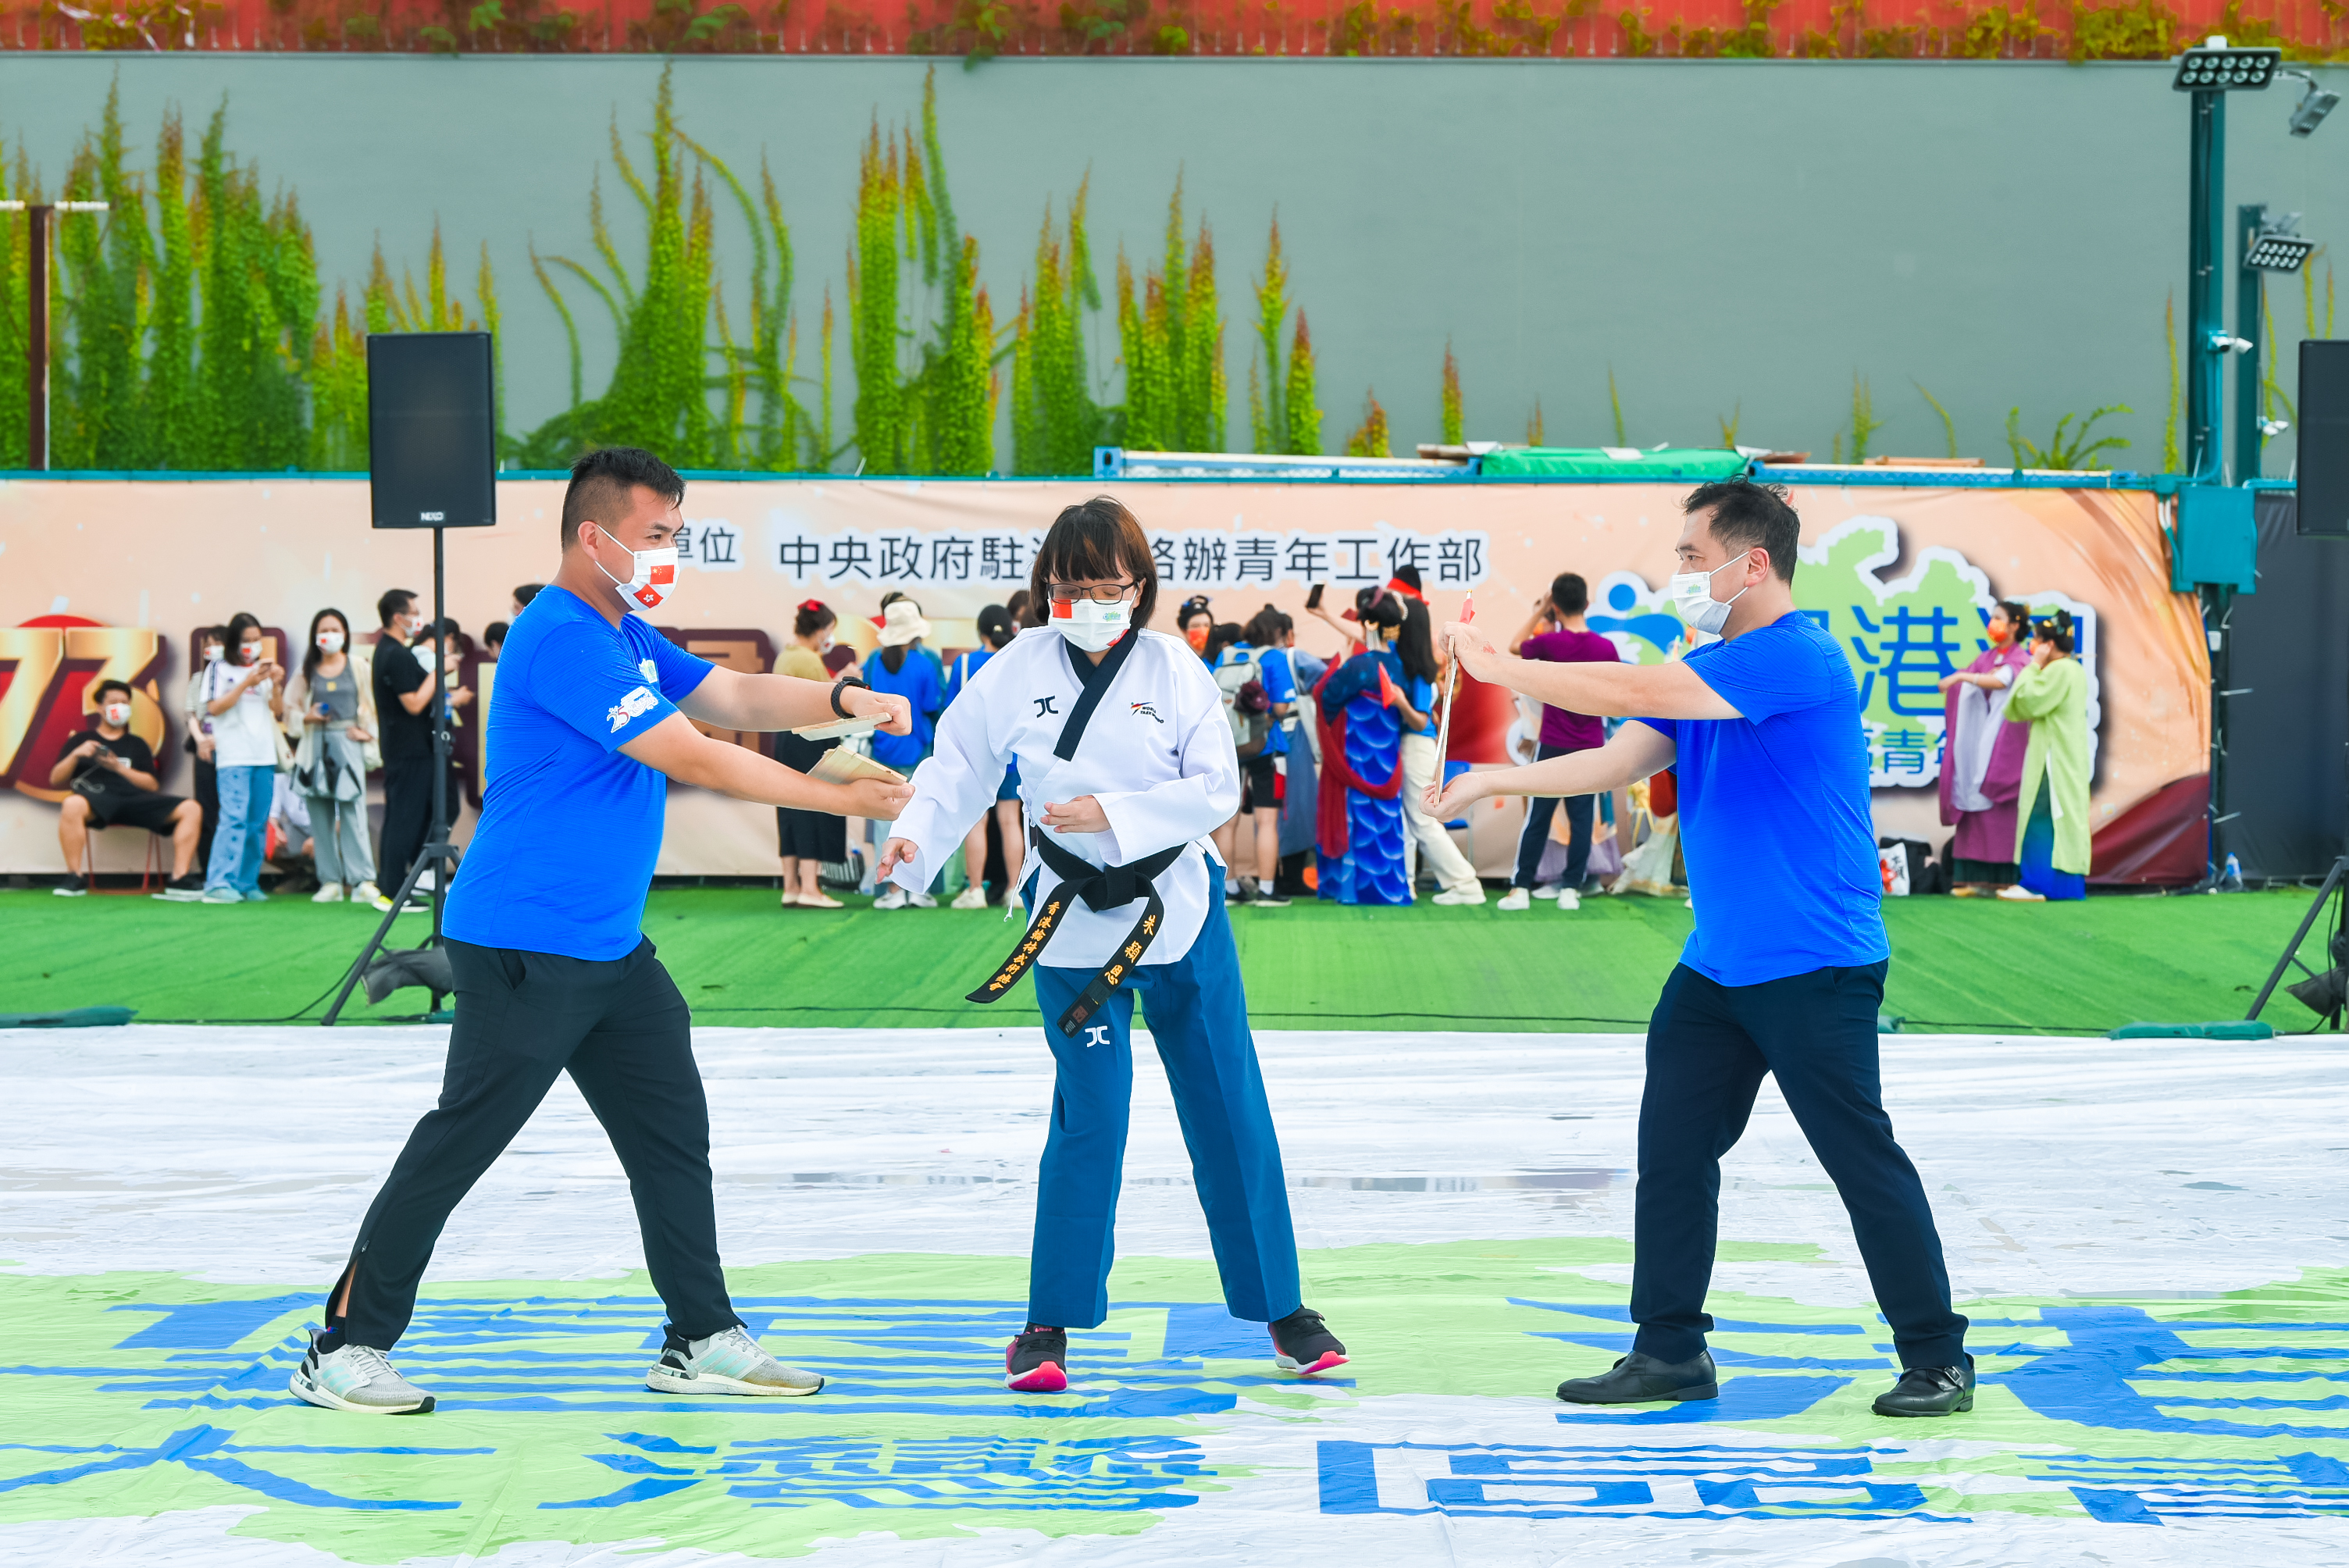 残疾人运动员朱颖恩表演跆拳道